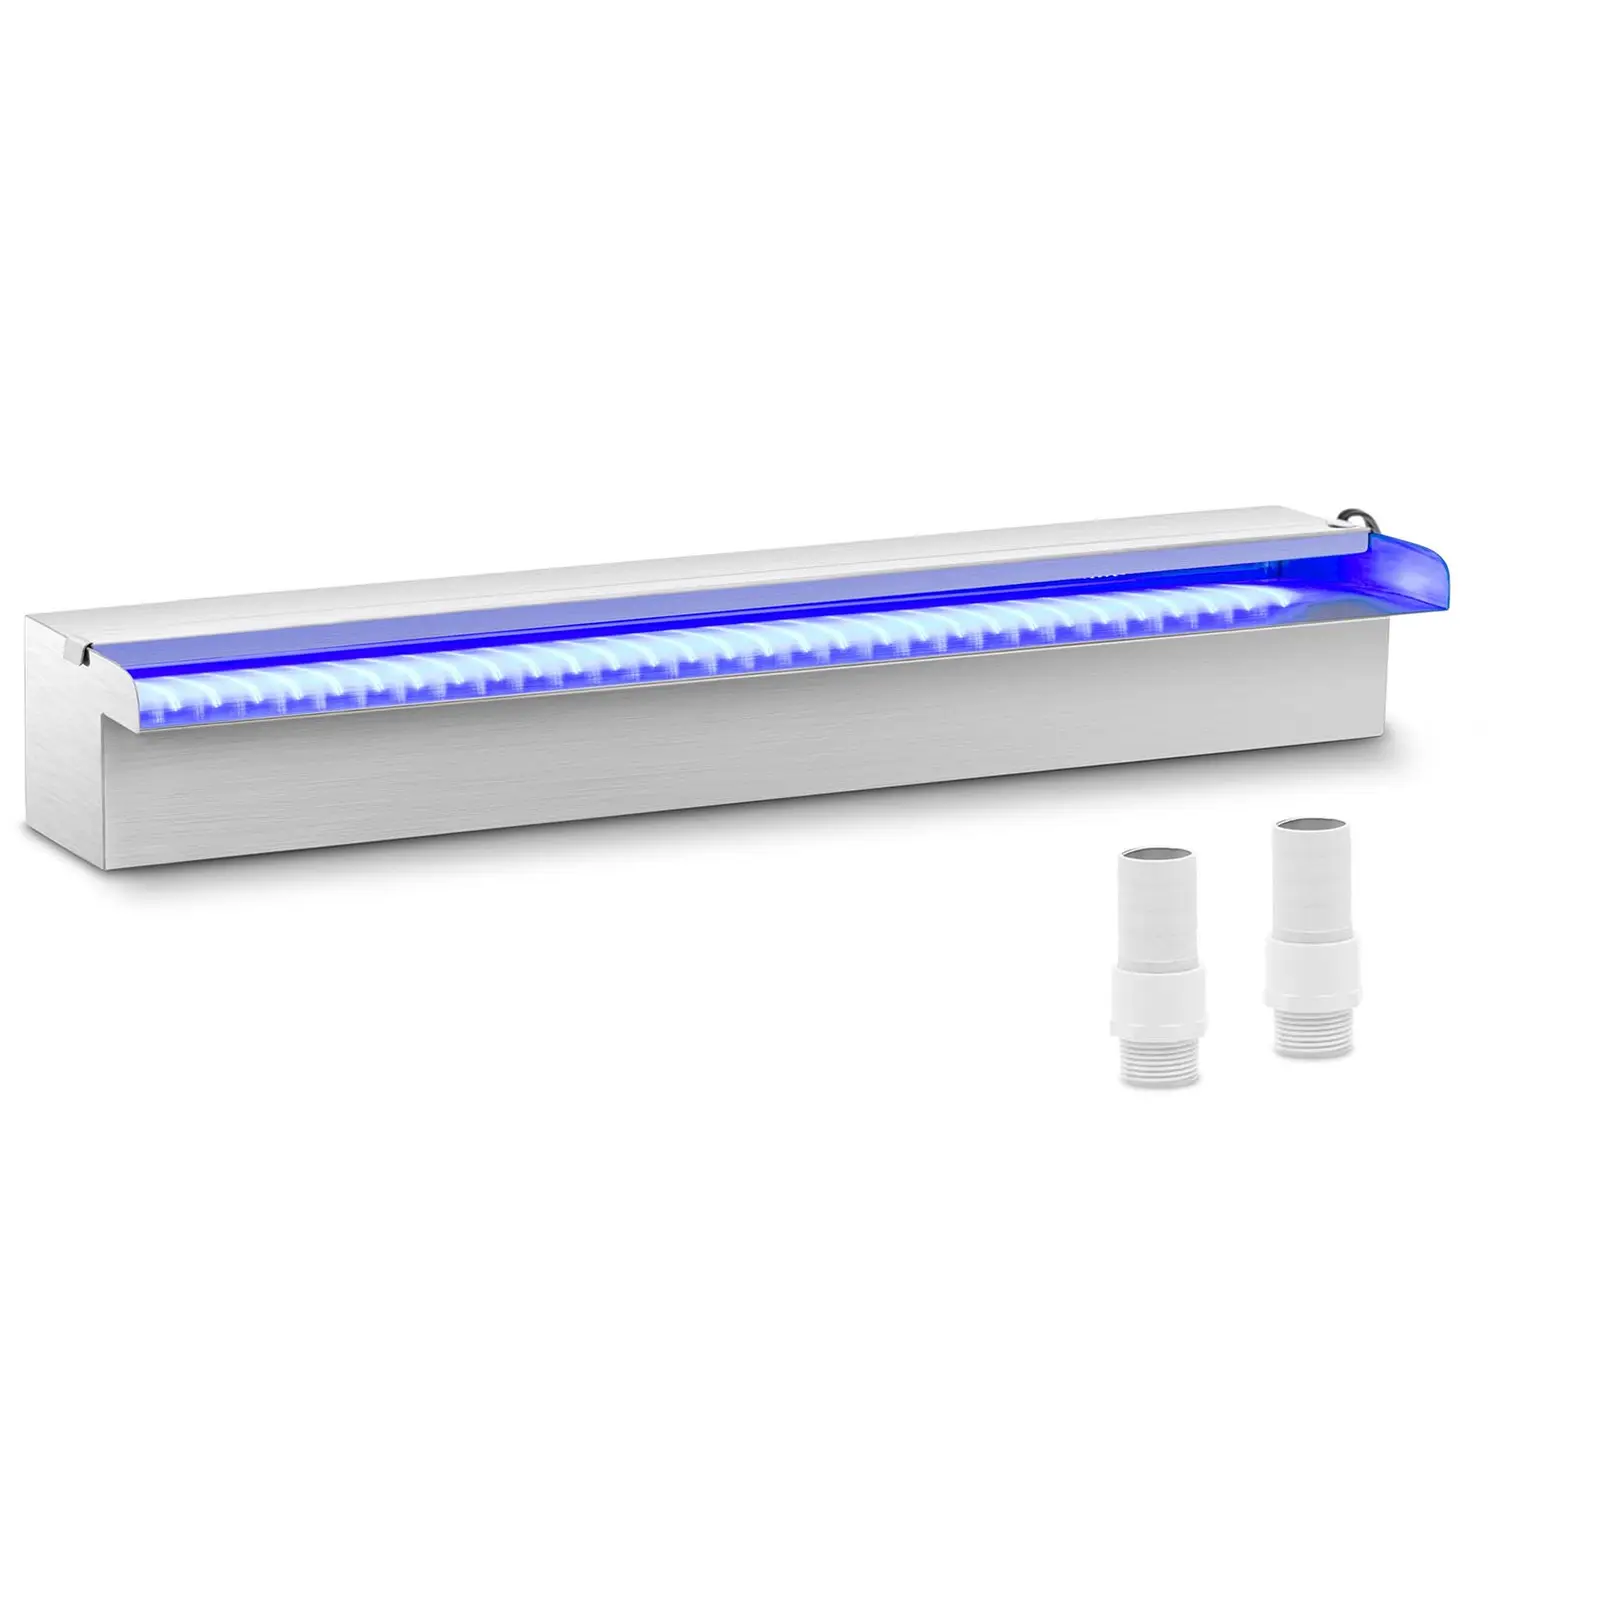 Силен душ - 60 cm - LED осветление - Синьо / Бяло